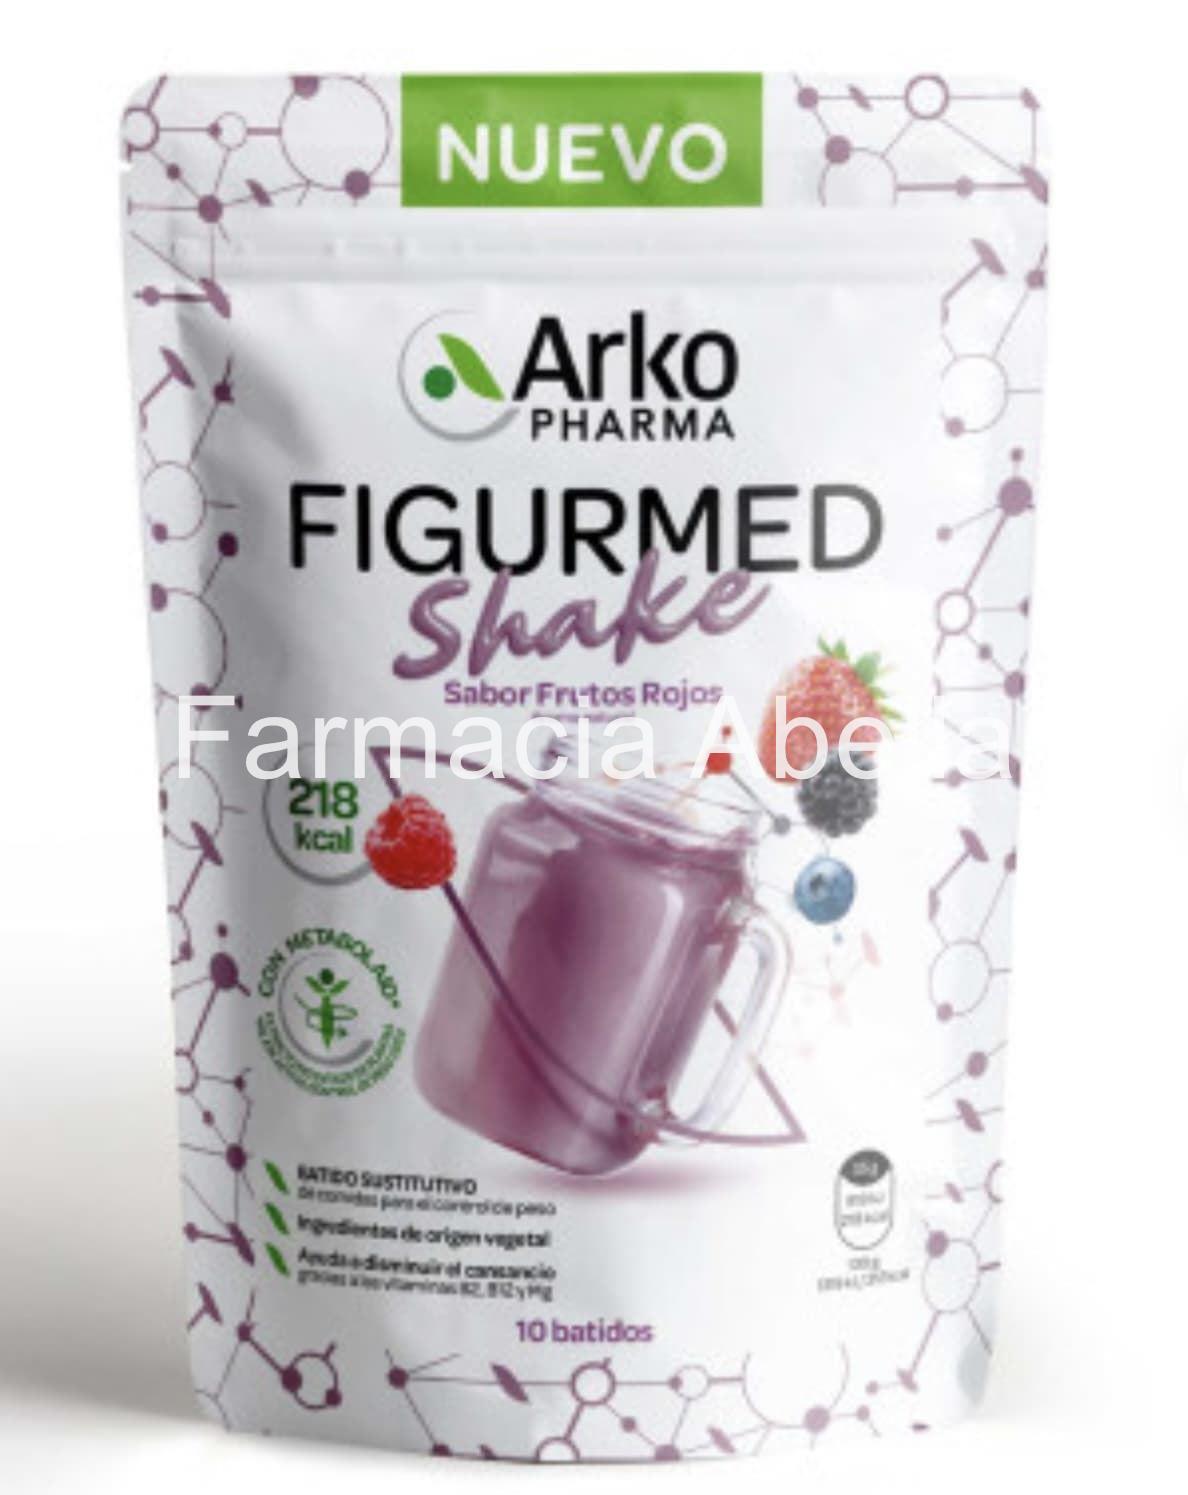 Arkopharma figurmed shake sabor frutos rojos 350 gramos - Imagen 1